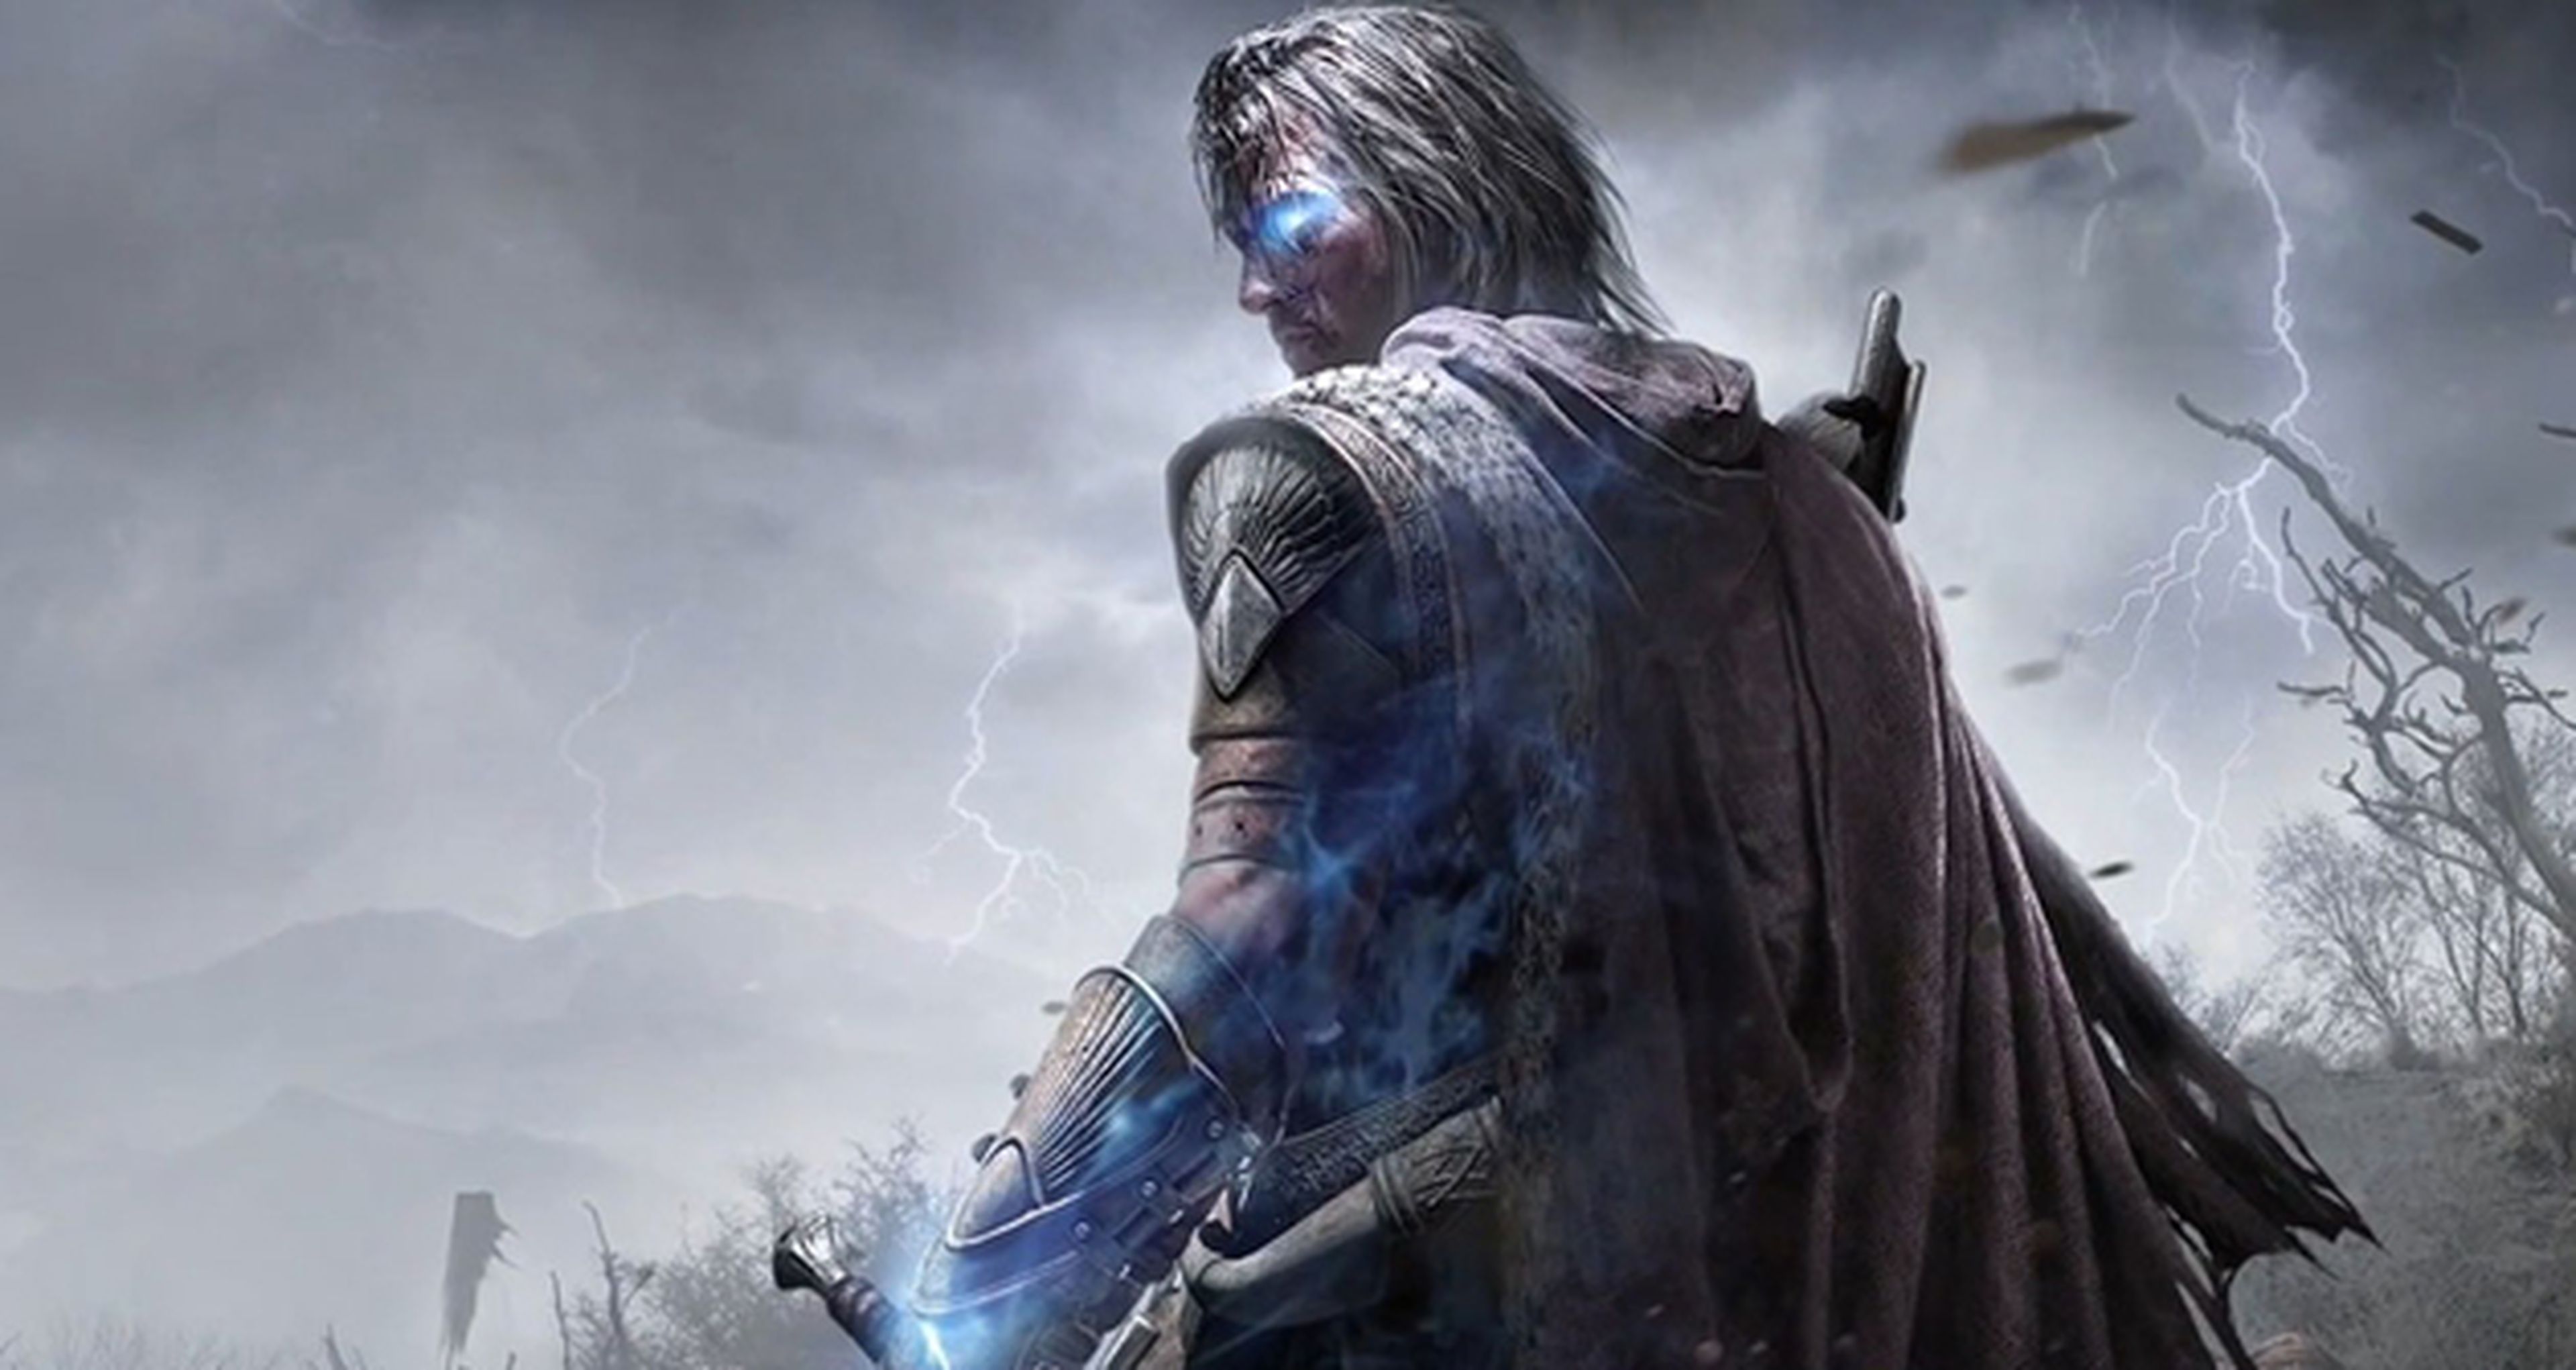 Sombras de Mordor tendrá edición exclusiva en GAME